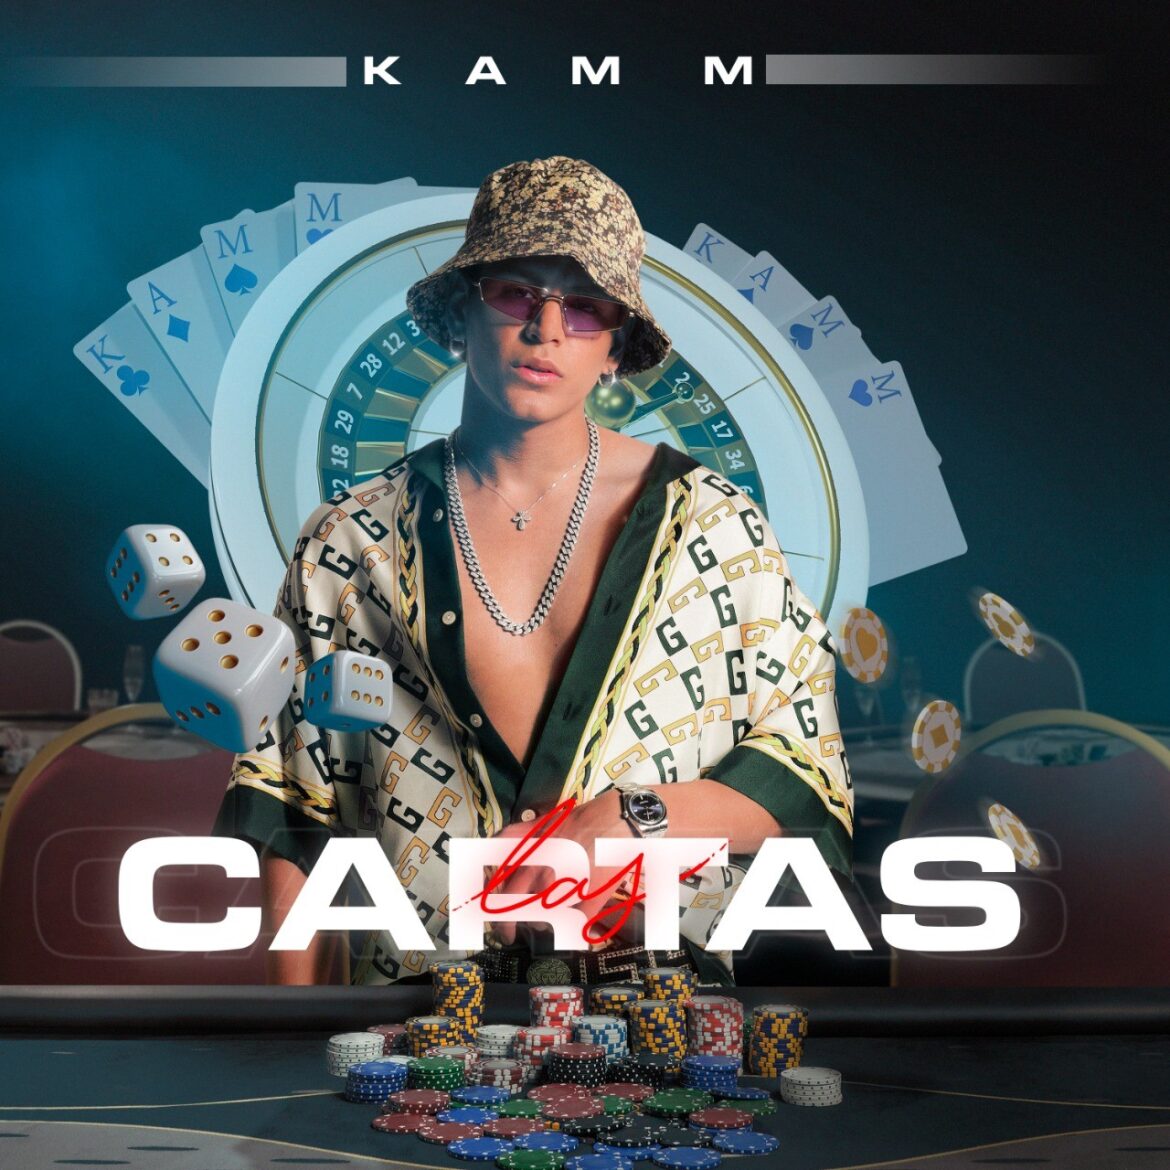 Kamm se juega “Las Cartas” en su nuevo sencillo promocional